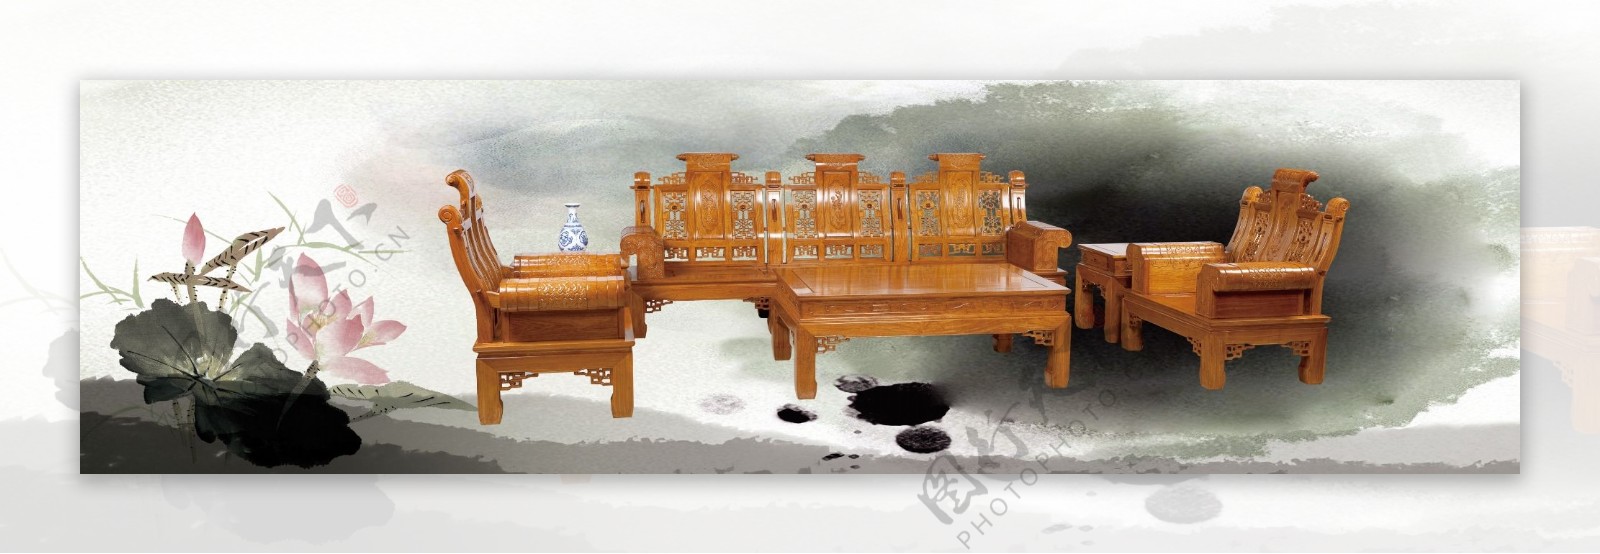 红木家具客厅木沙发荷花中国风图片